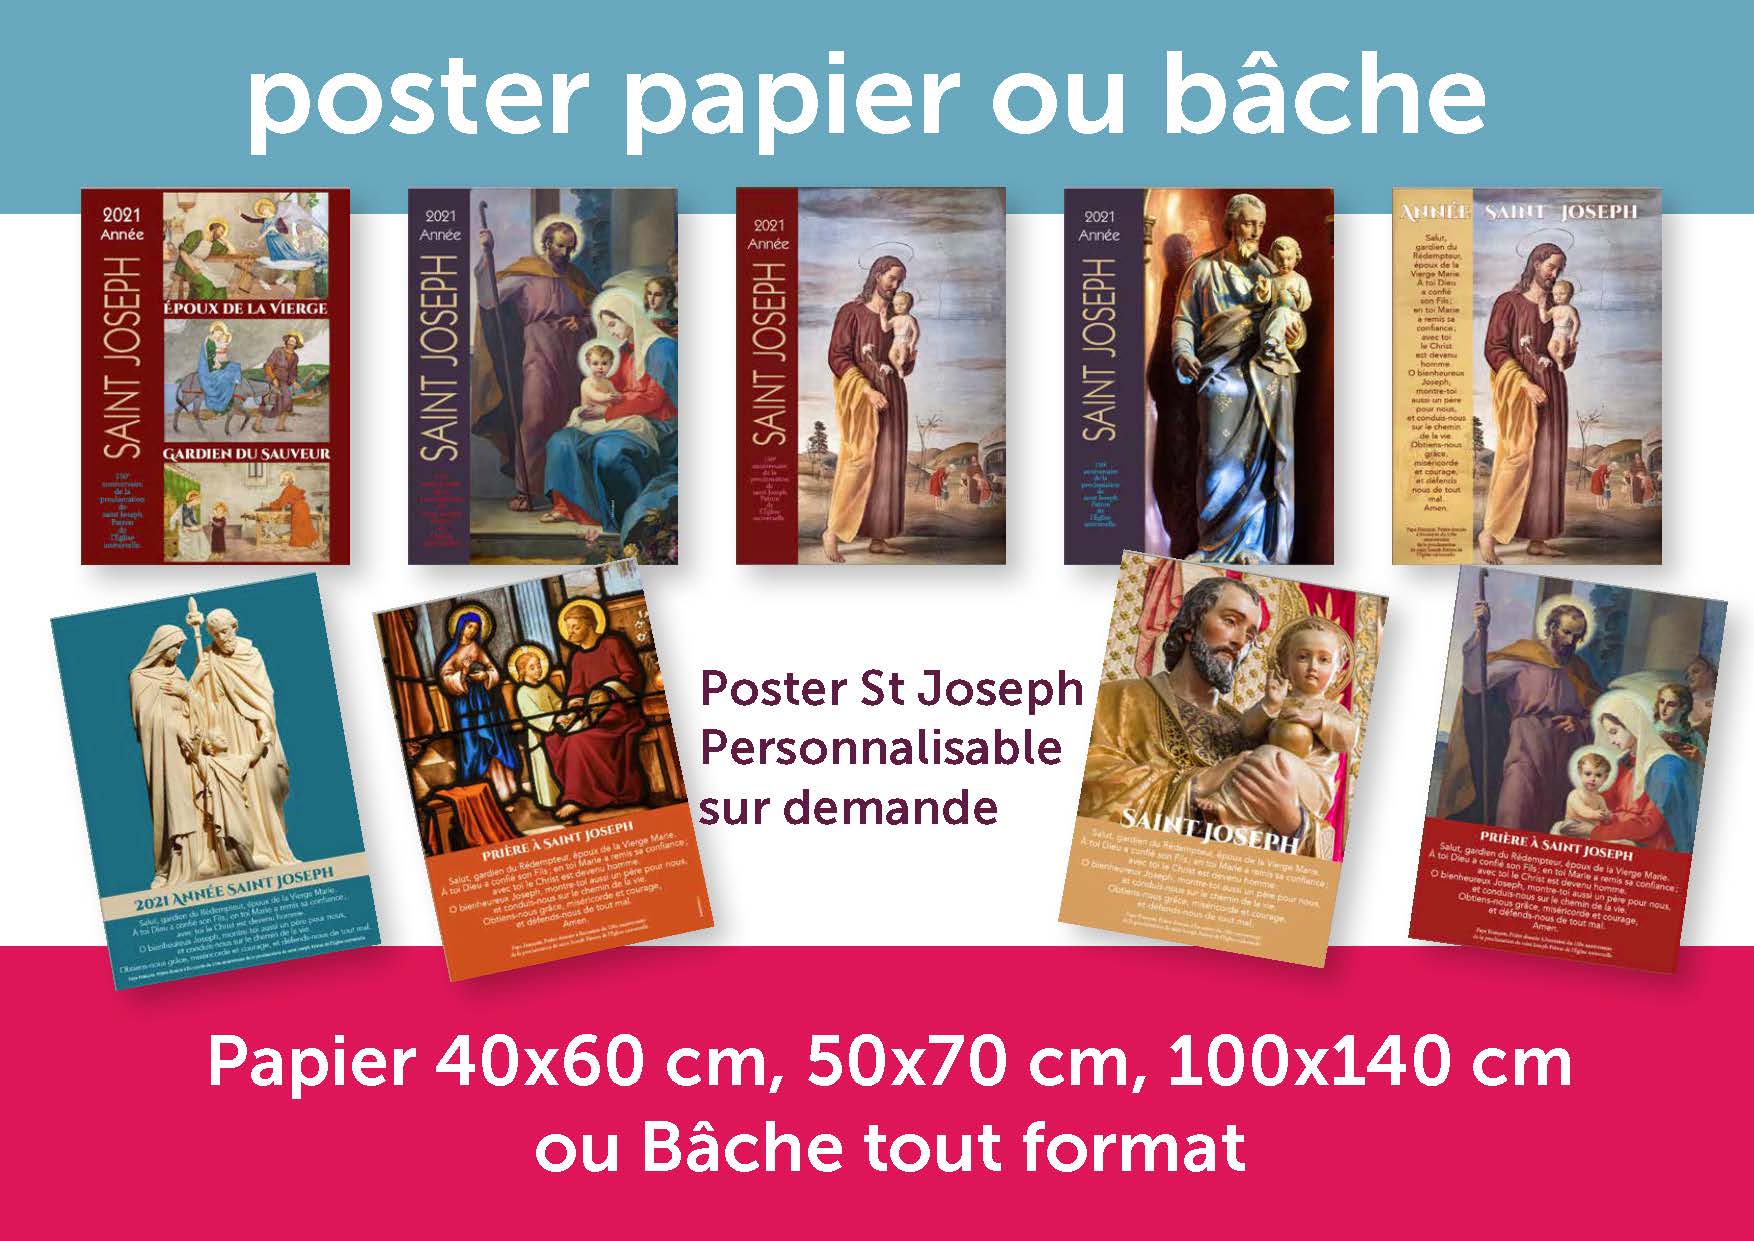 Poster papier (ou bâche) pour annoncer l'année Saint Joseph